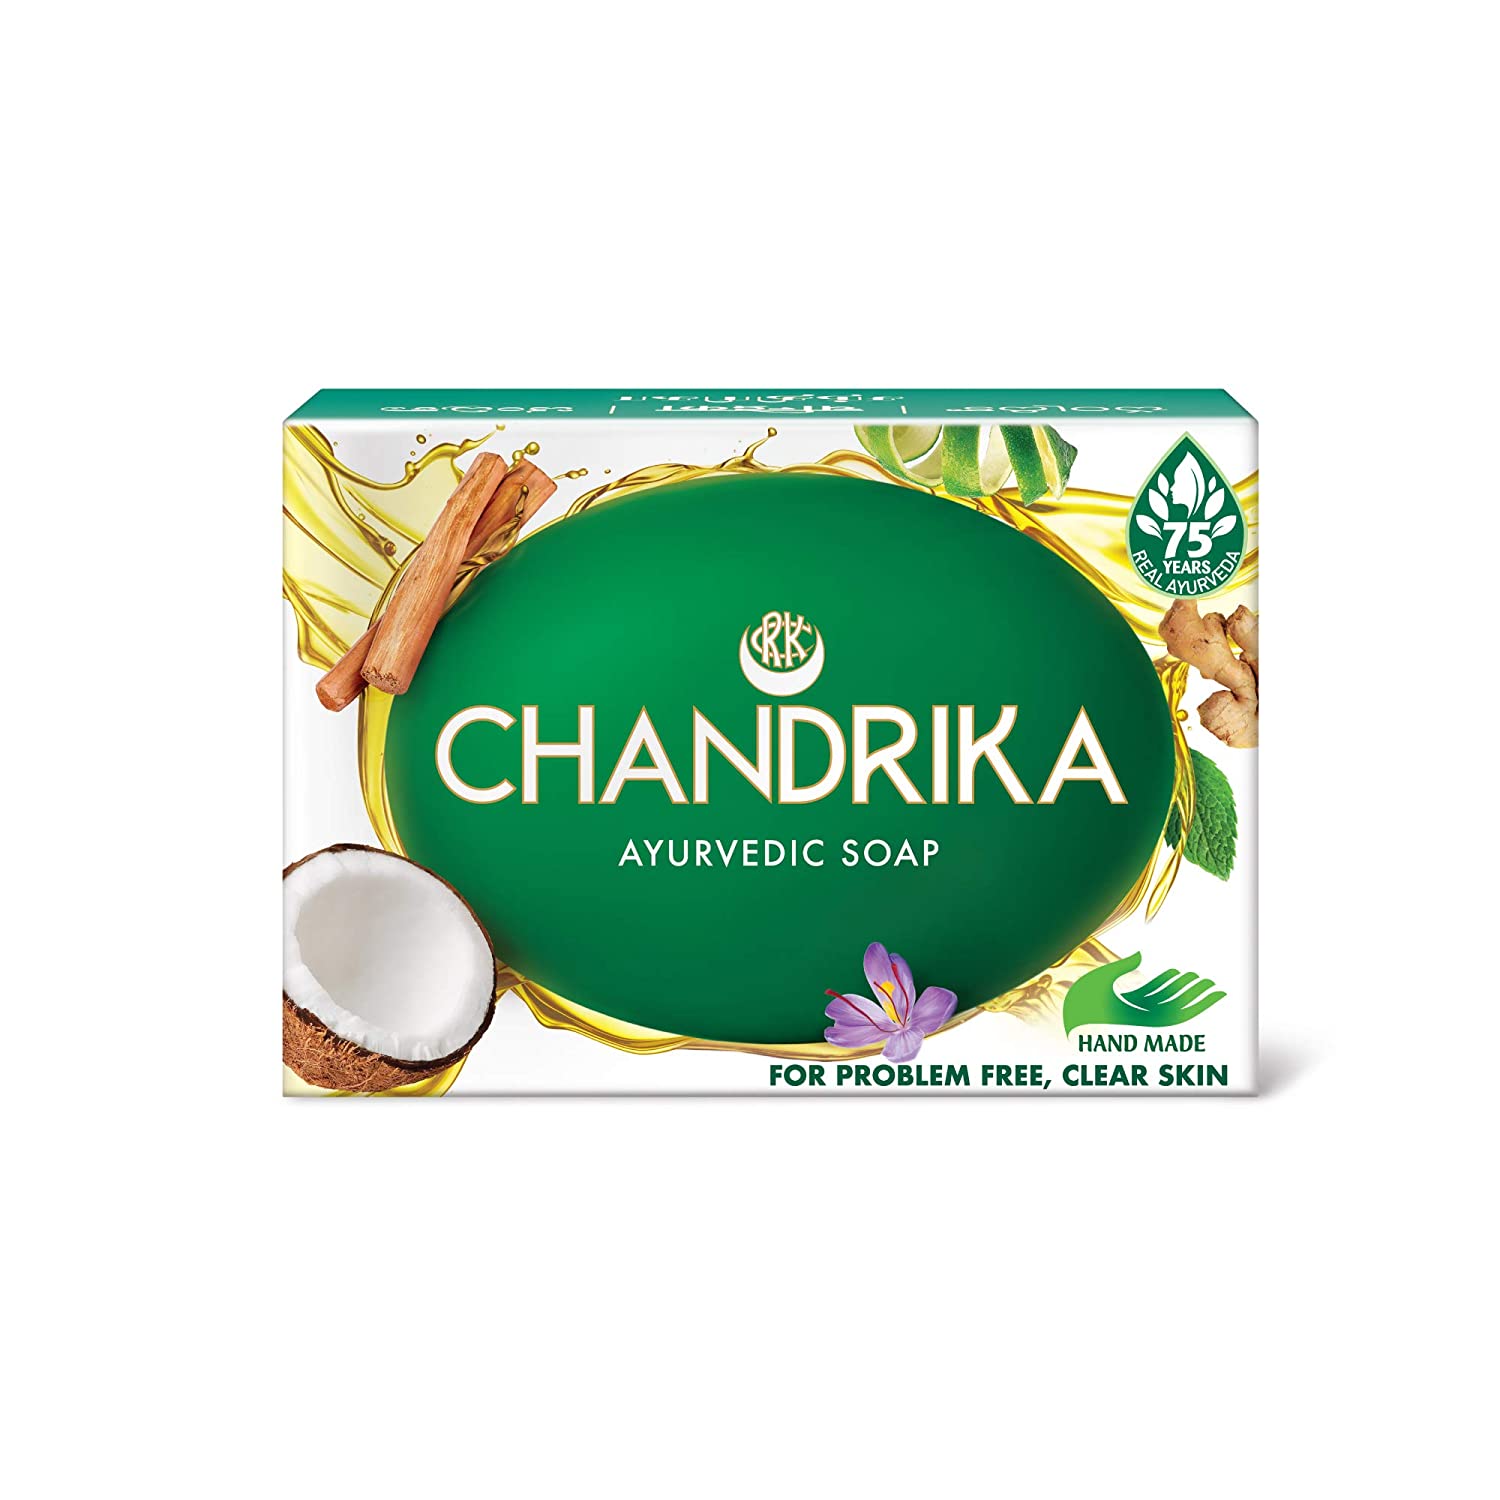 Chandrika soap